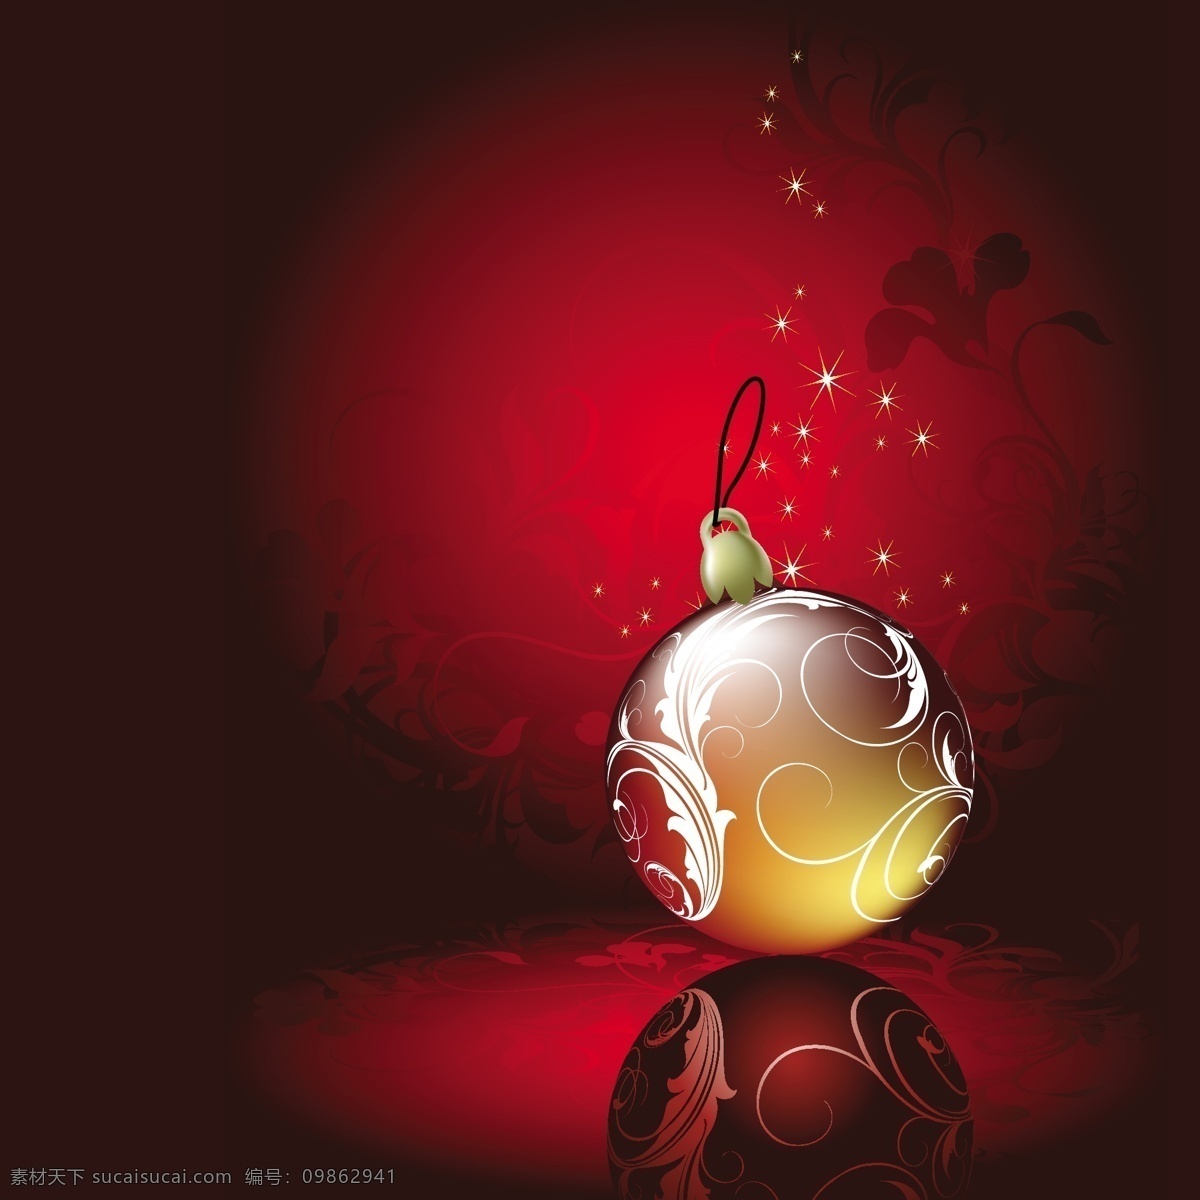 圣诞 装饰 球 矢量图 商业矢量 矢量下载 网页矢量 矢量节日 节日素材 其他节日